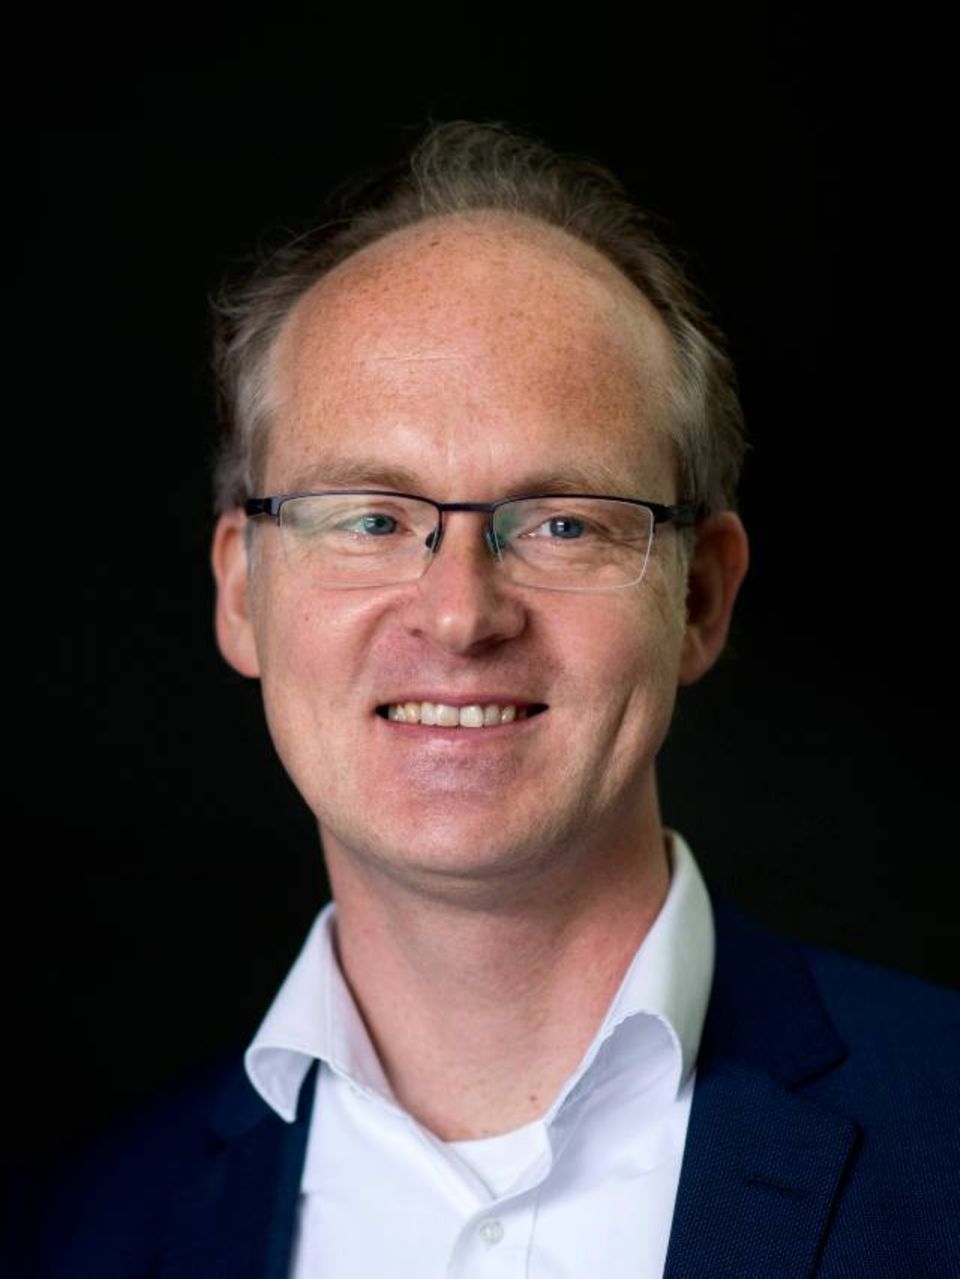 Sebastian Dullien ist Professor für Allgemeine Volkswirtschaftslehre und Wissenschaftlicher Direktor des Instituts für Makroökonomie und Konjunkturforschung (IMK) in der gewerkschaftsnahen Hans-Böckler-Stiftung